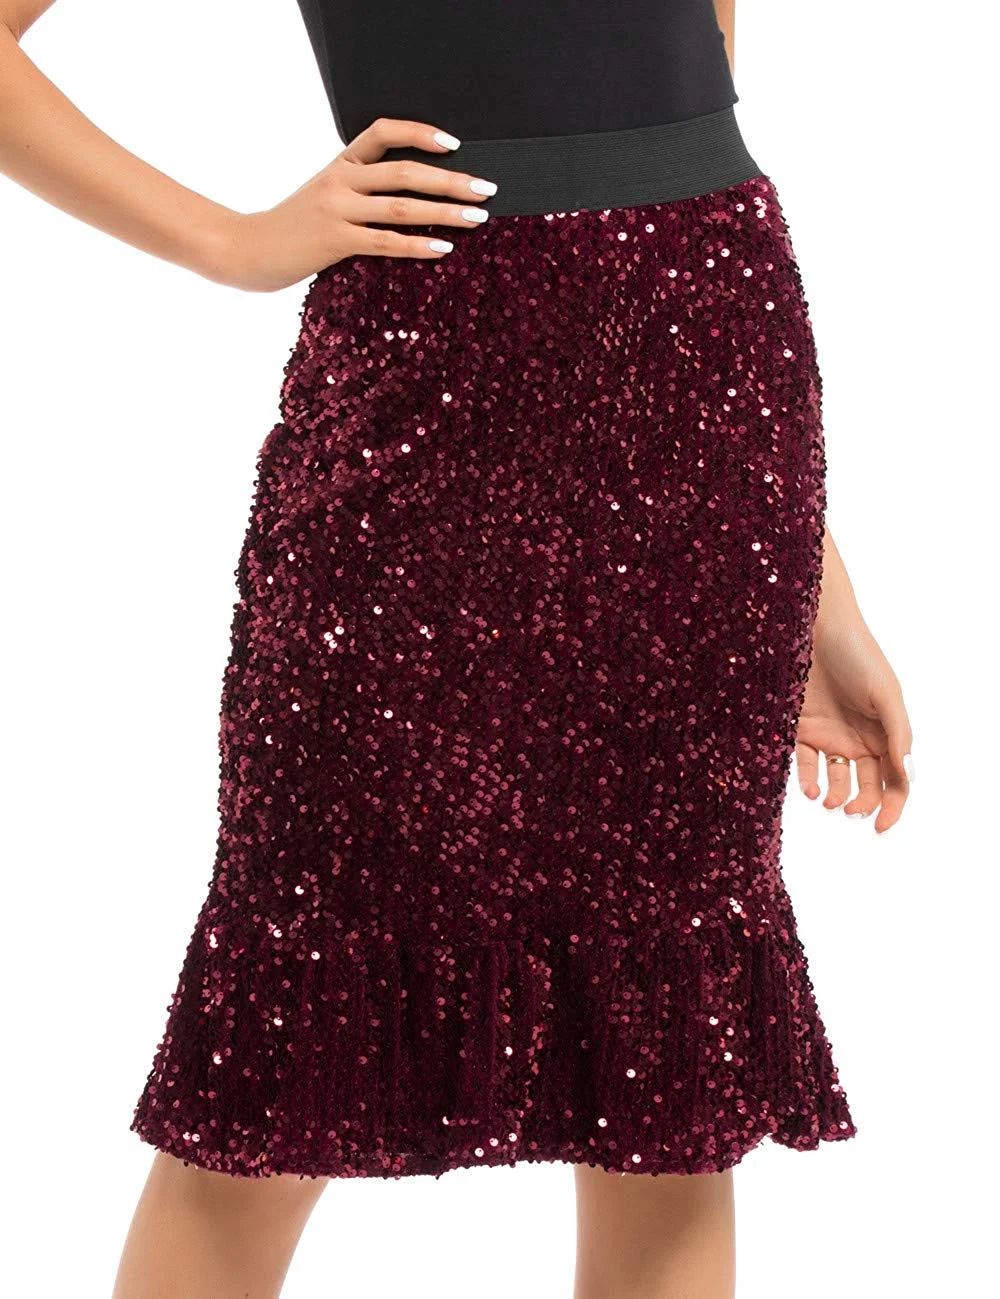 Women's Sequin Skirt High Waist Velvet Shimmer Mermaid Ruffle Party Pencil Skirt